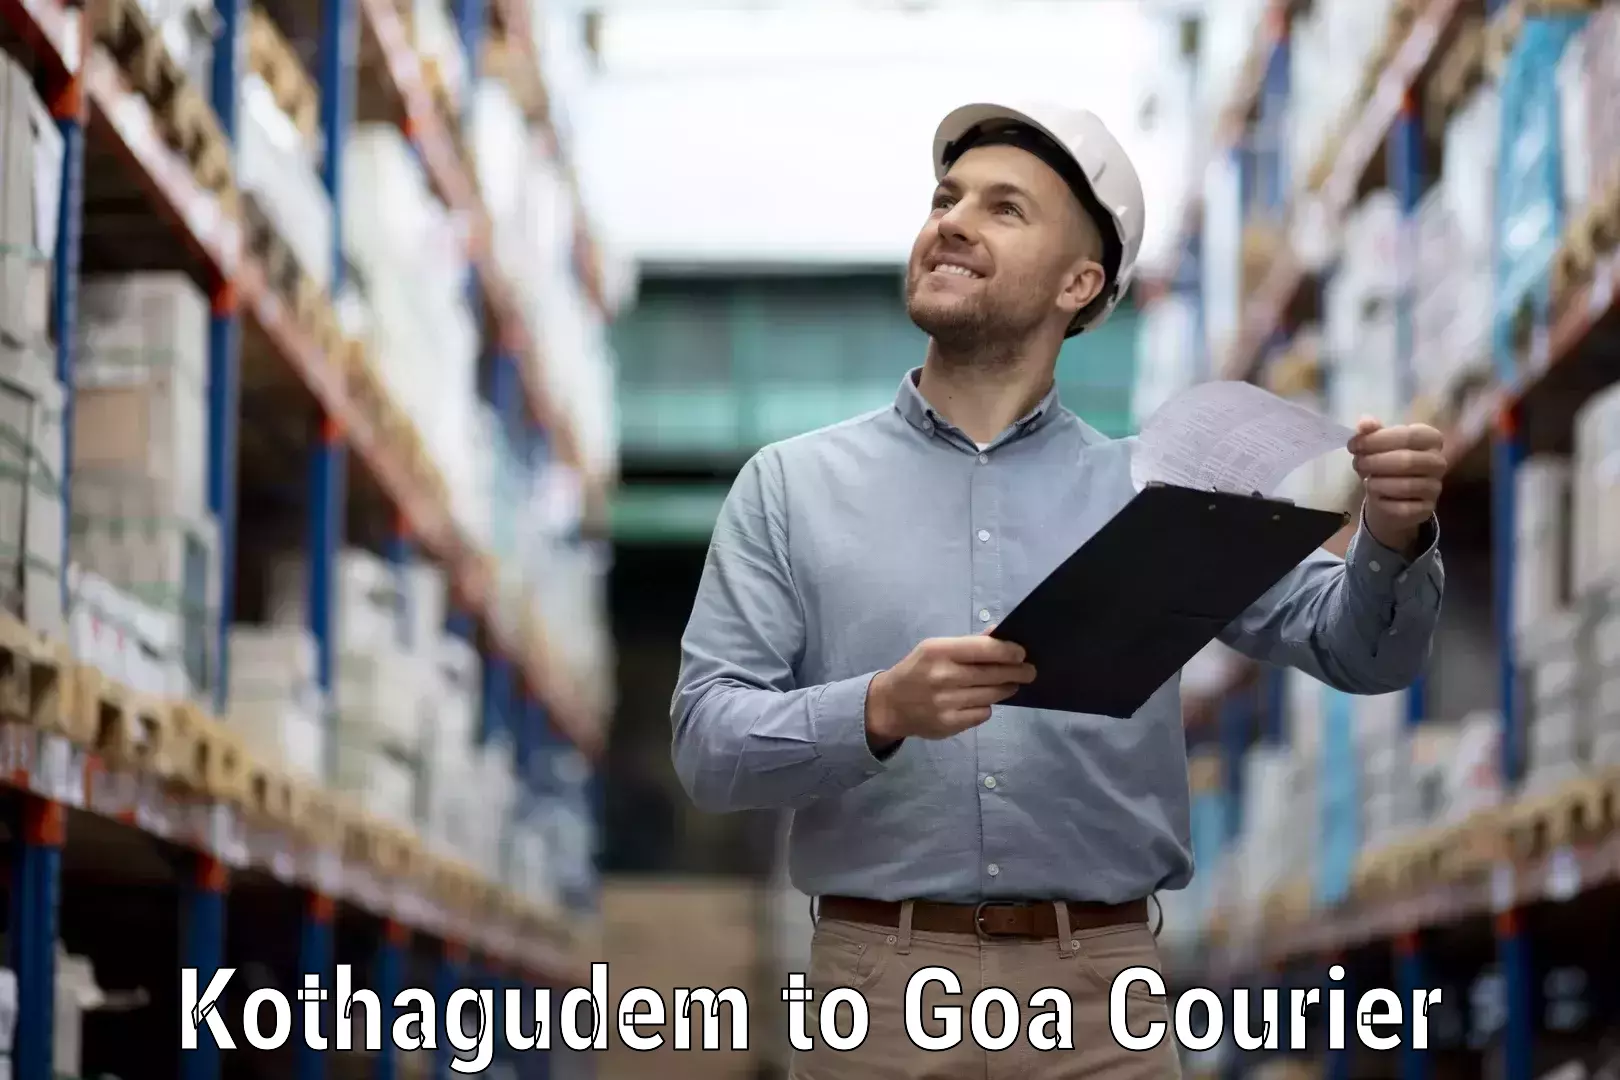 Multi-carrier shipping Kothagudem to IIT Goa